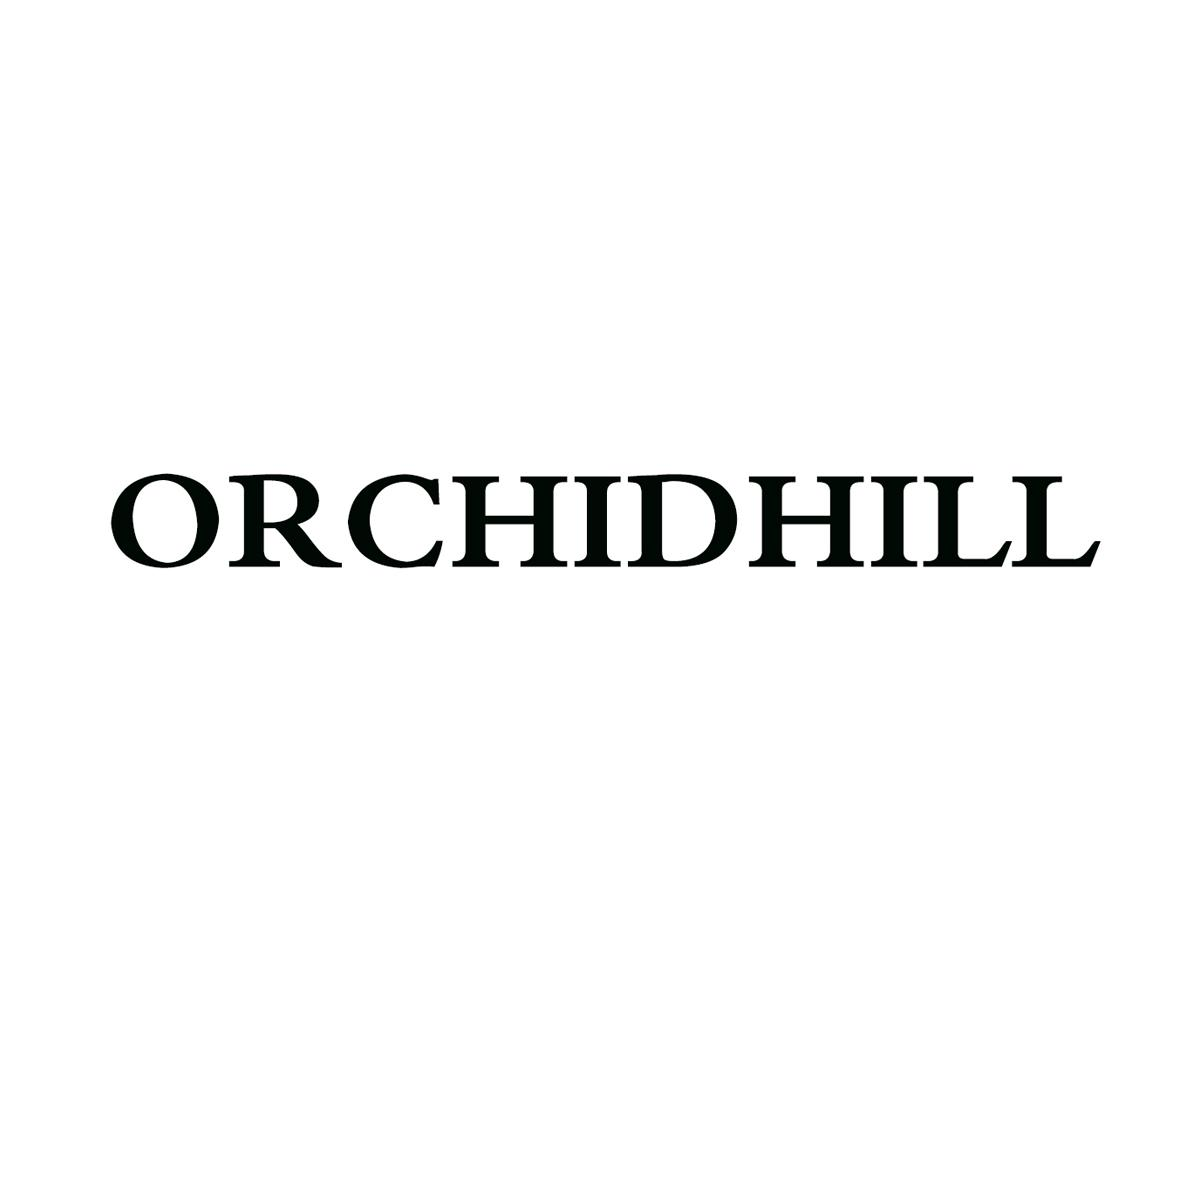 ORCHIDHILL